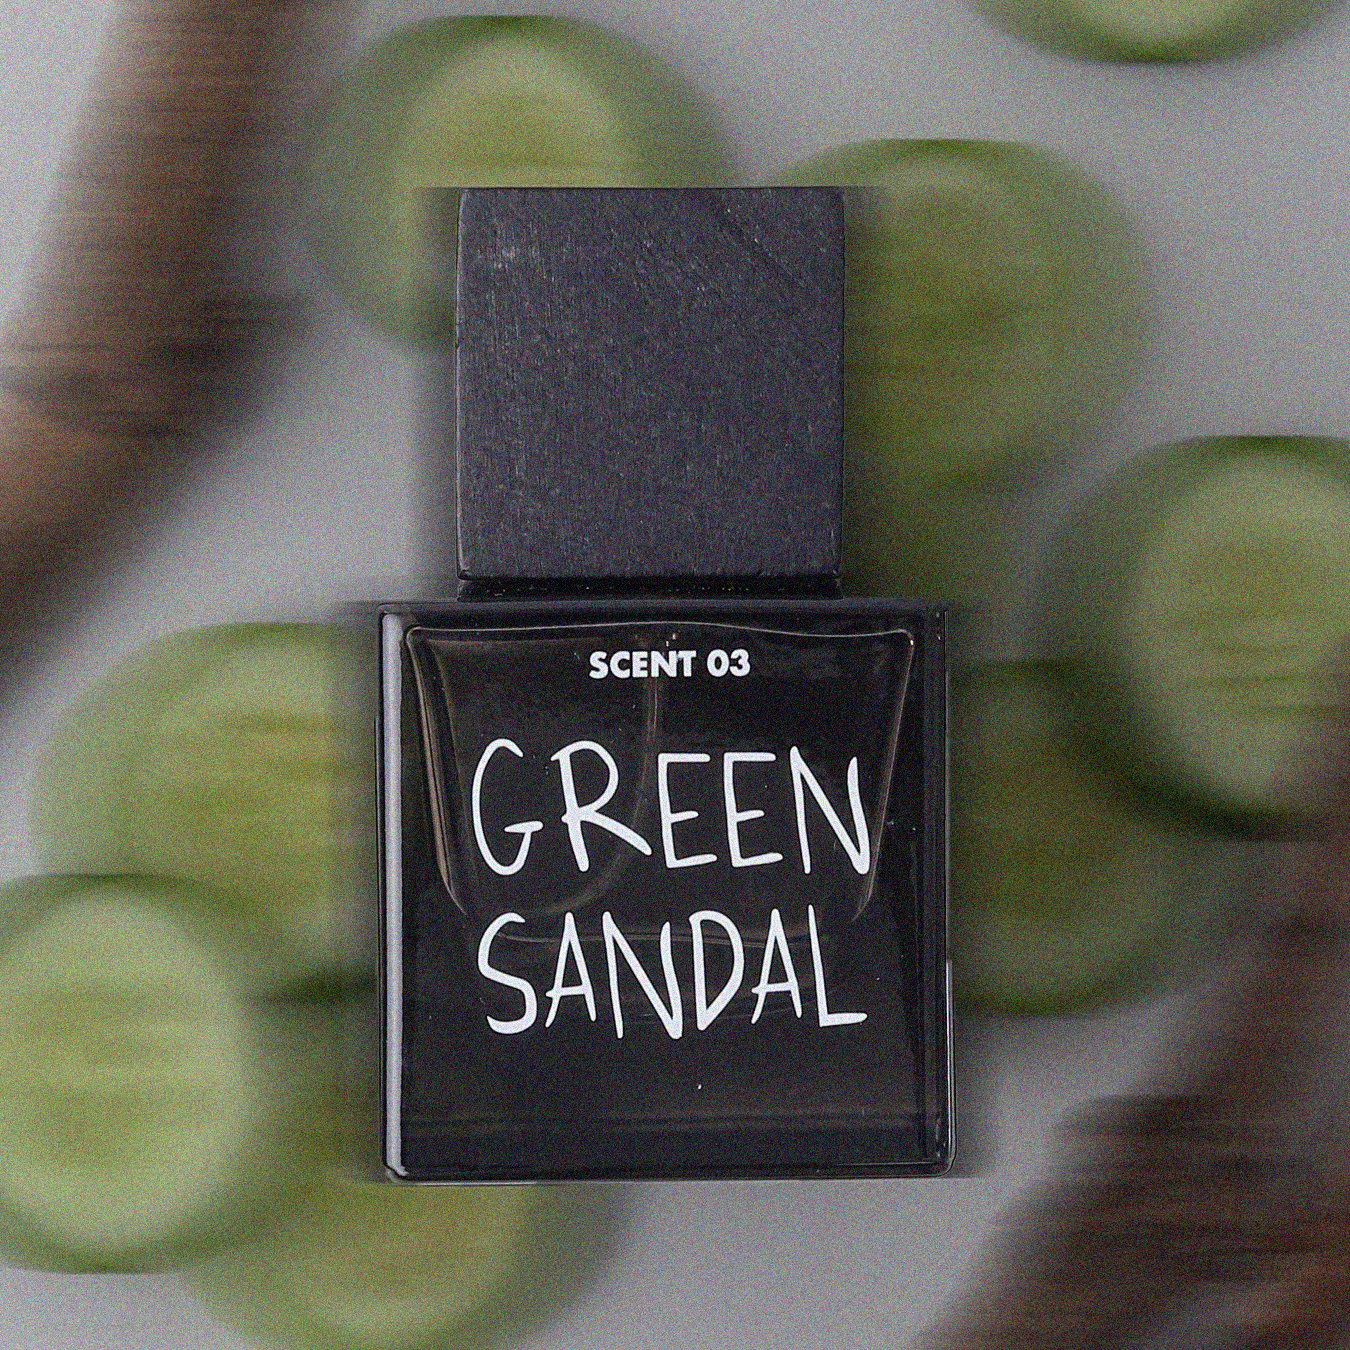 Green Sandal - Extrait de Parfum